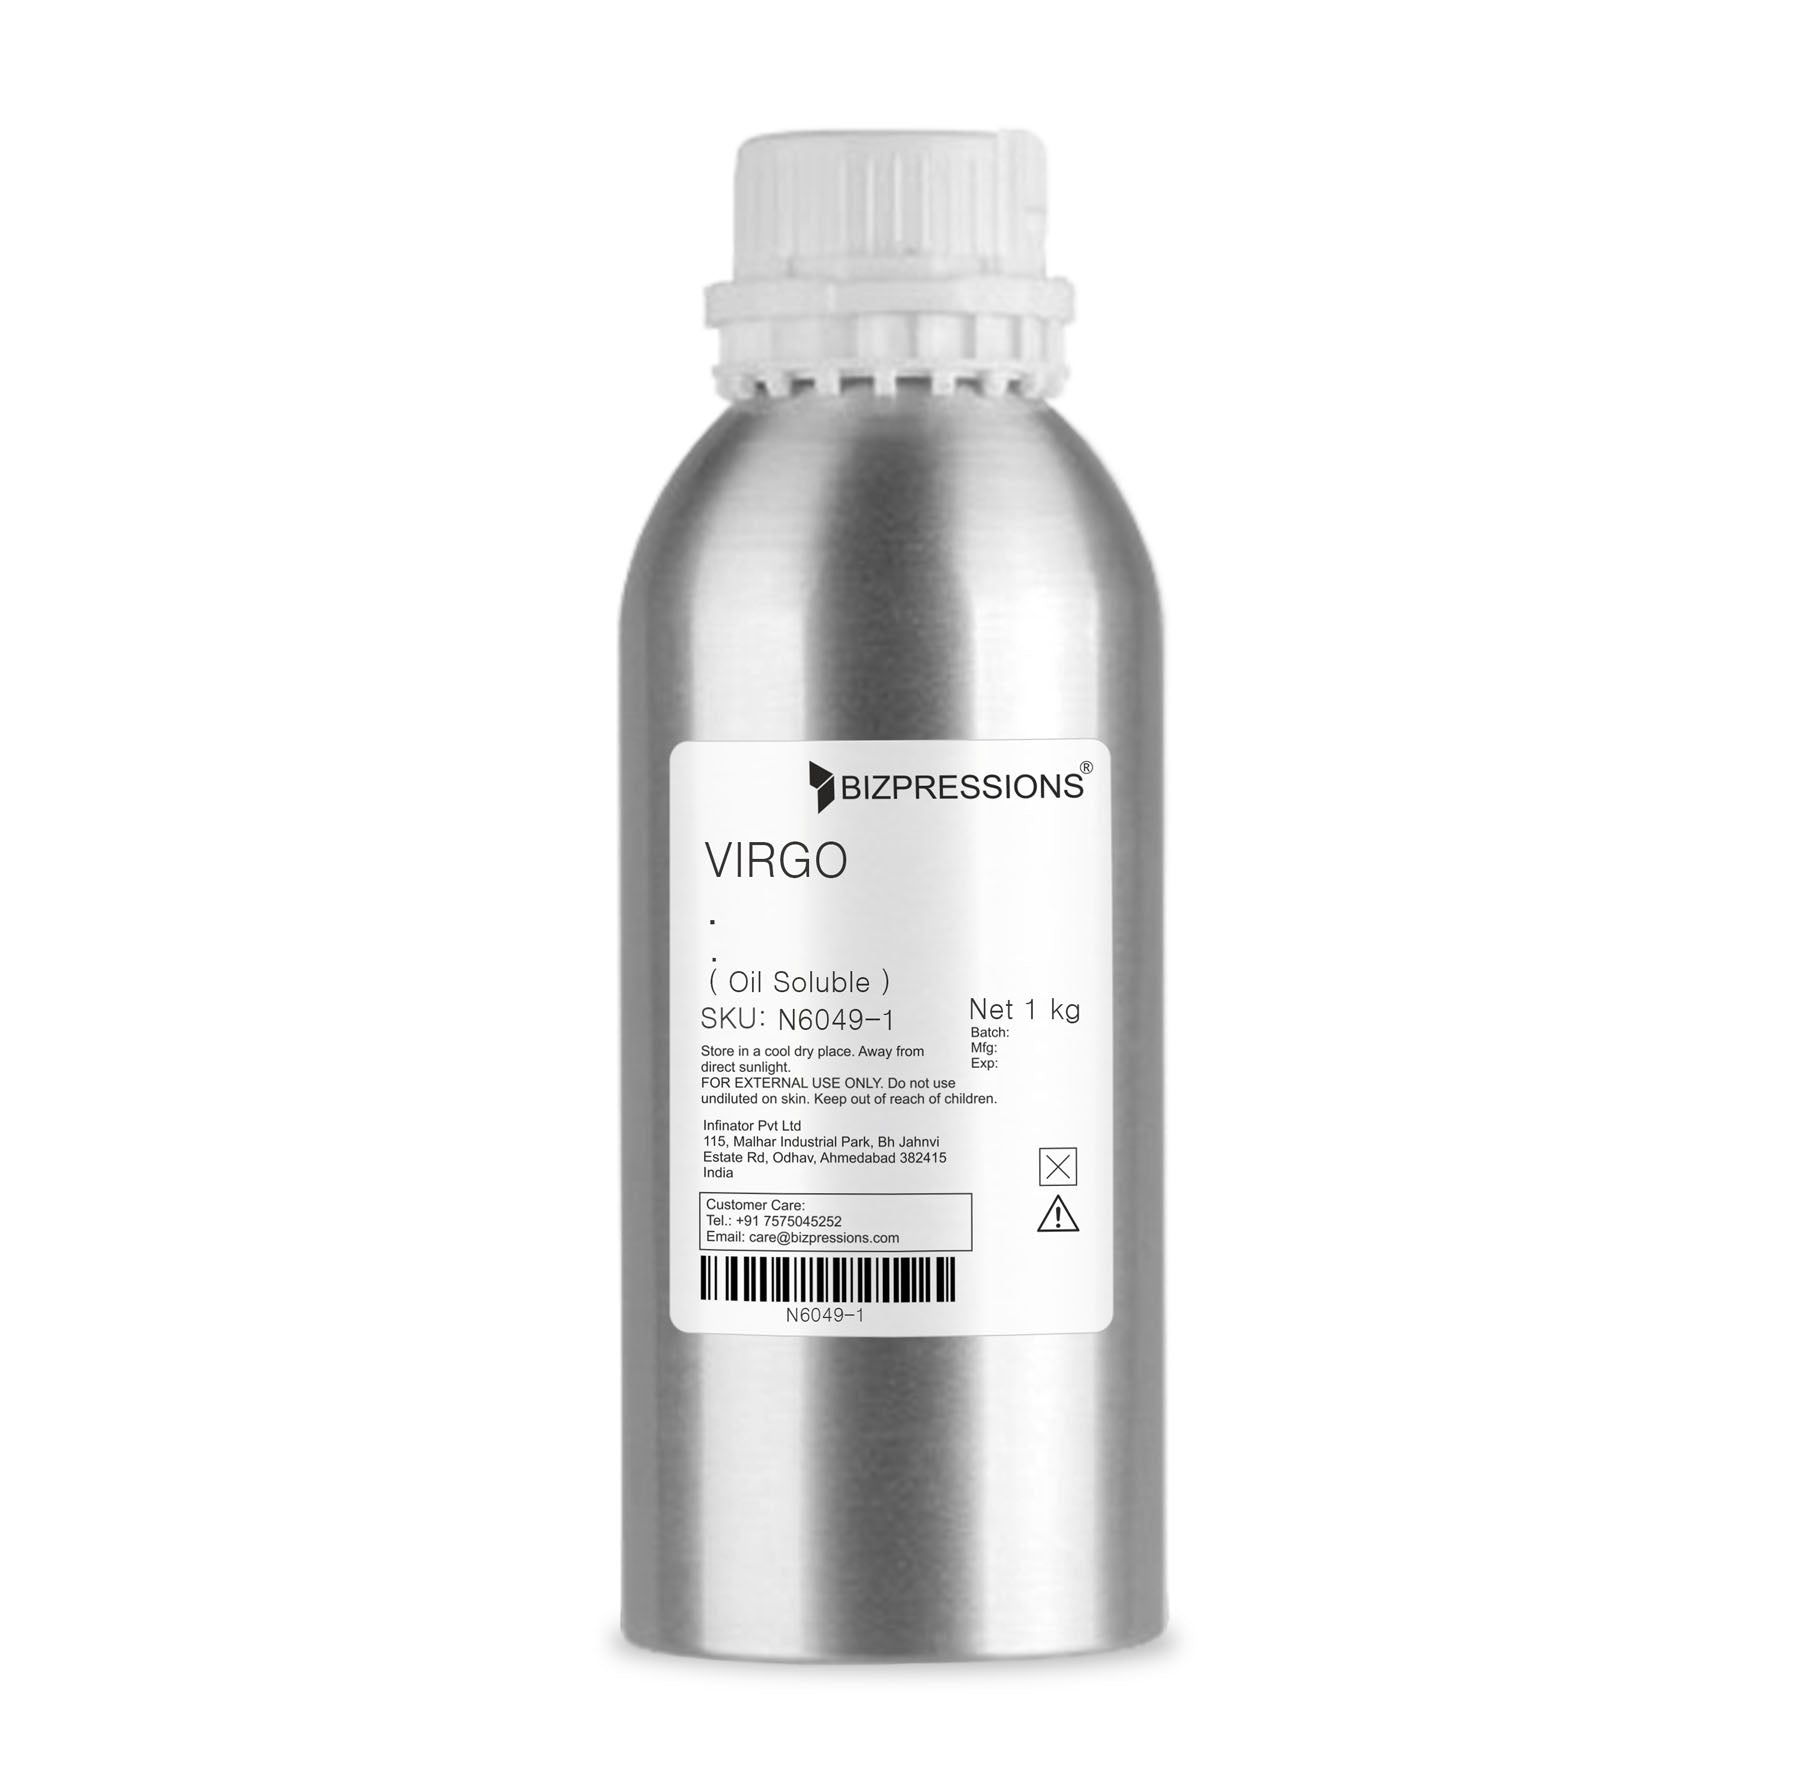 VIRGO - Fragrance ( Oil Soluble ) - 1 kg